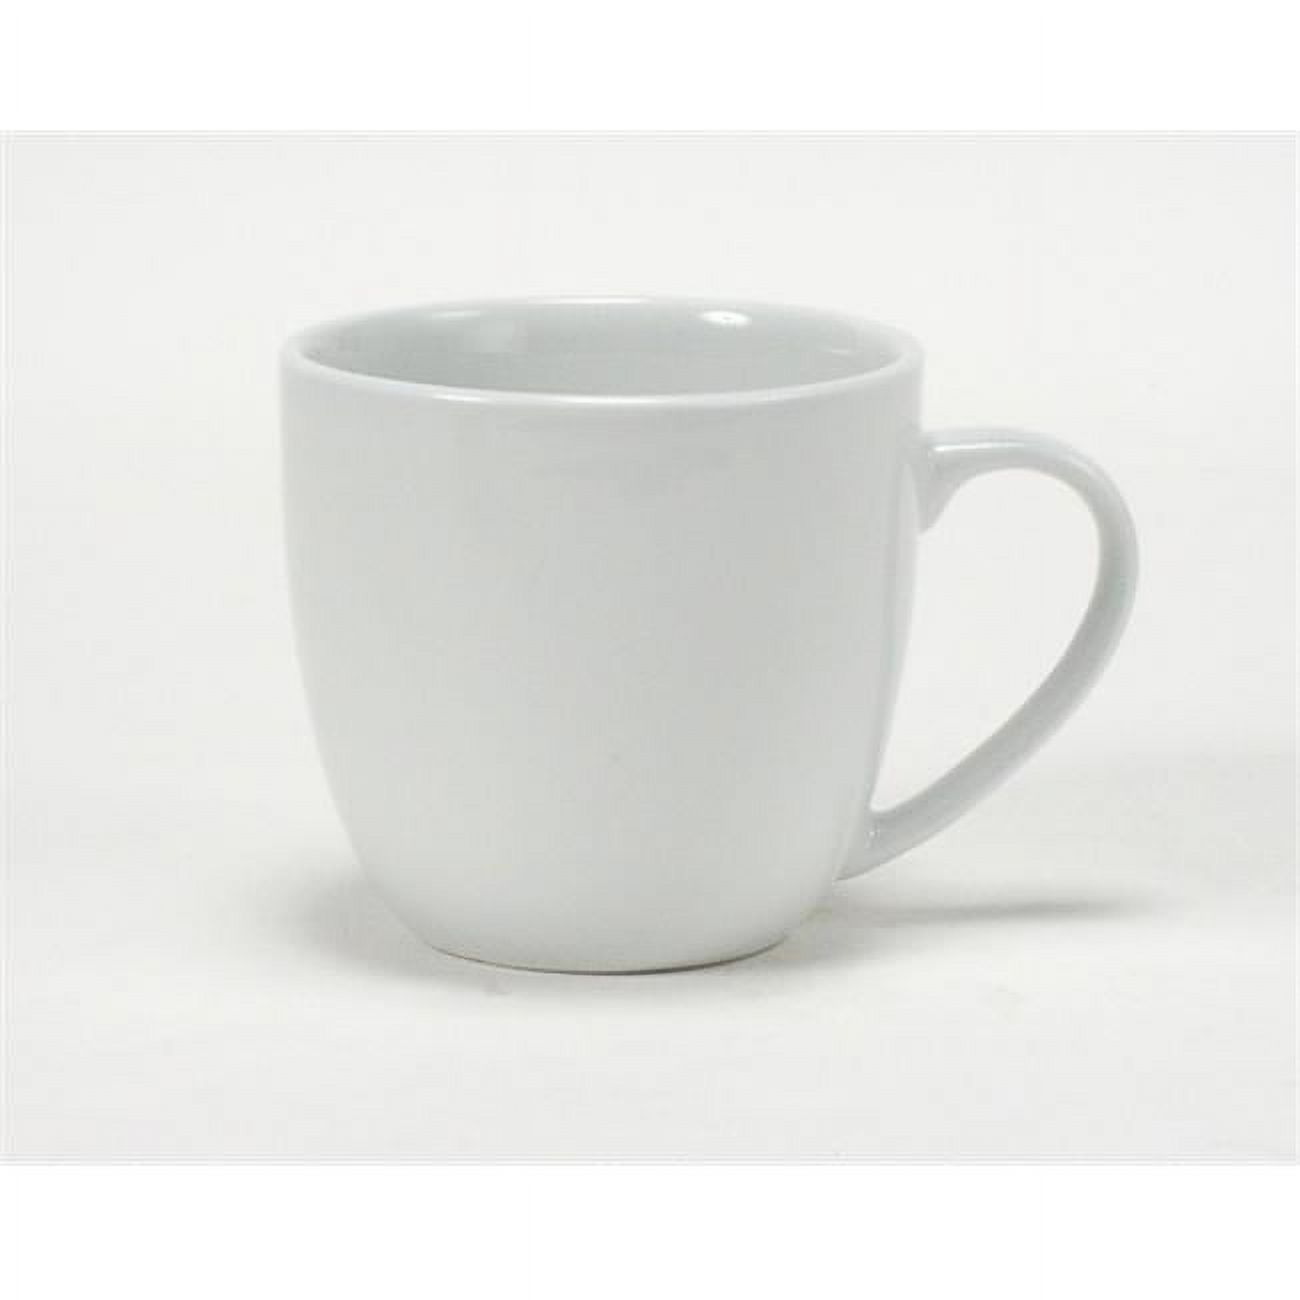 Tuxton Duratux Porcelain White 12-Ounce Milano Mug, Pack of 24 - image 1 of 1